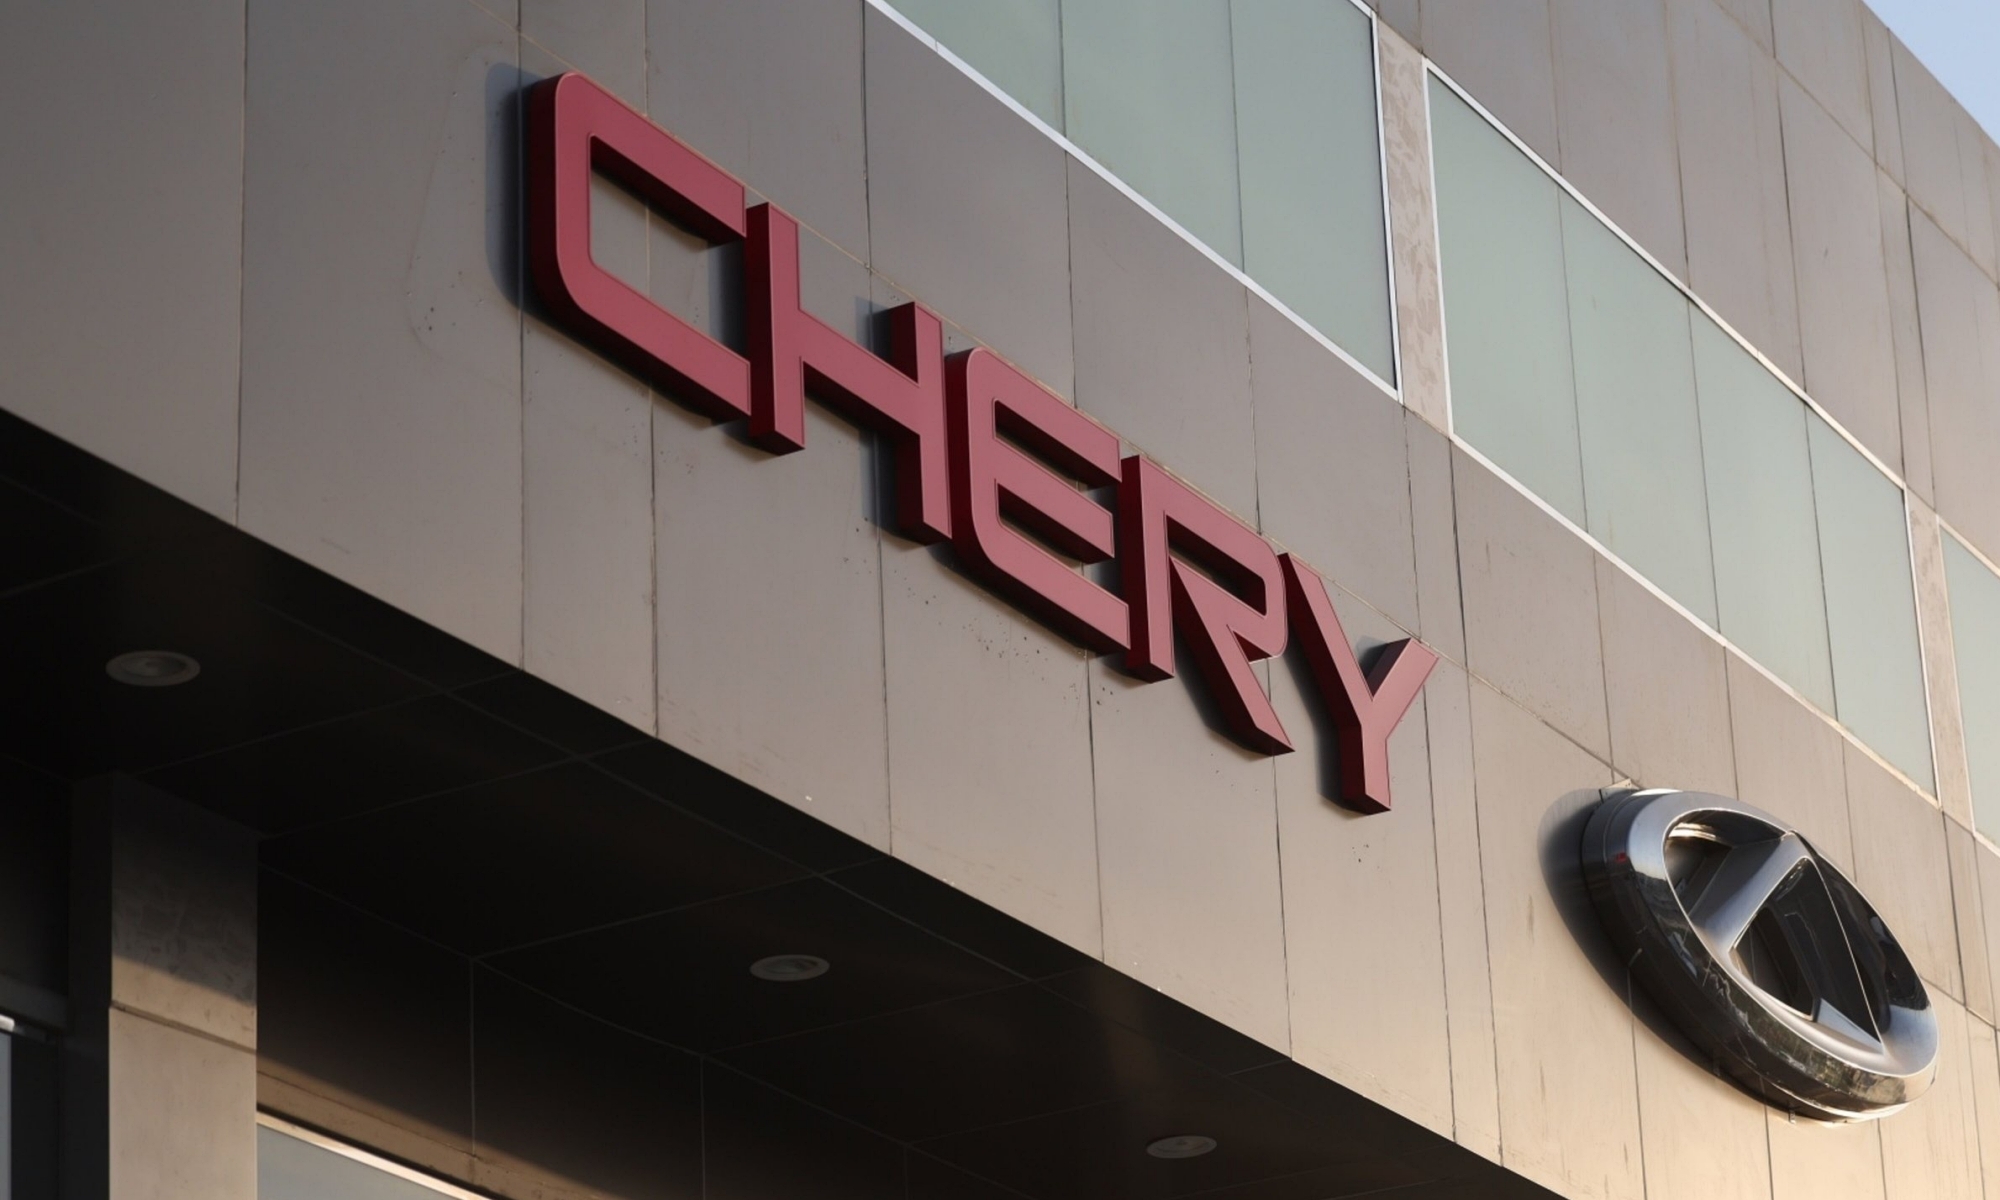 Chery se ha convertido en uno de los grandes conglomerados eléctricos del mercado asiático.